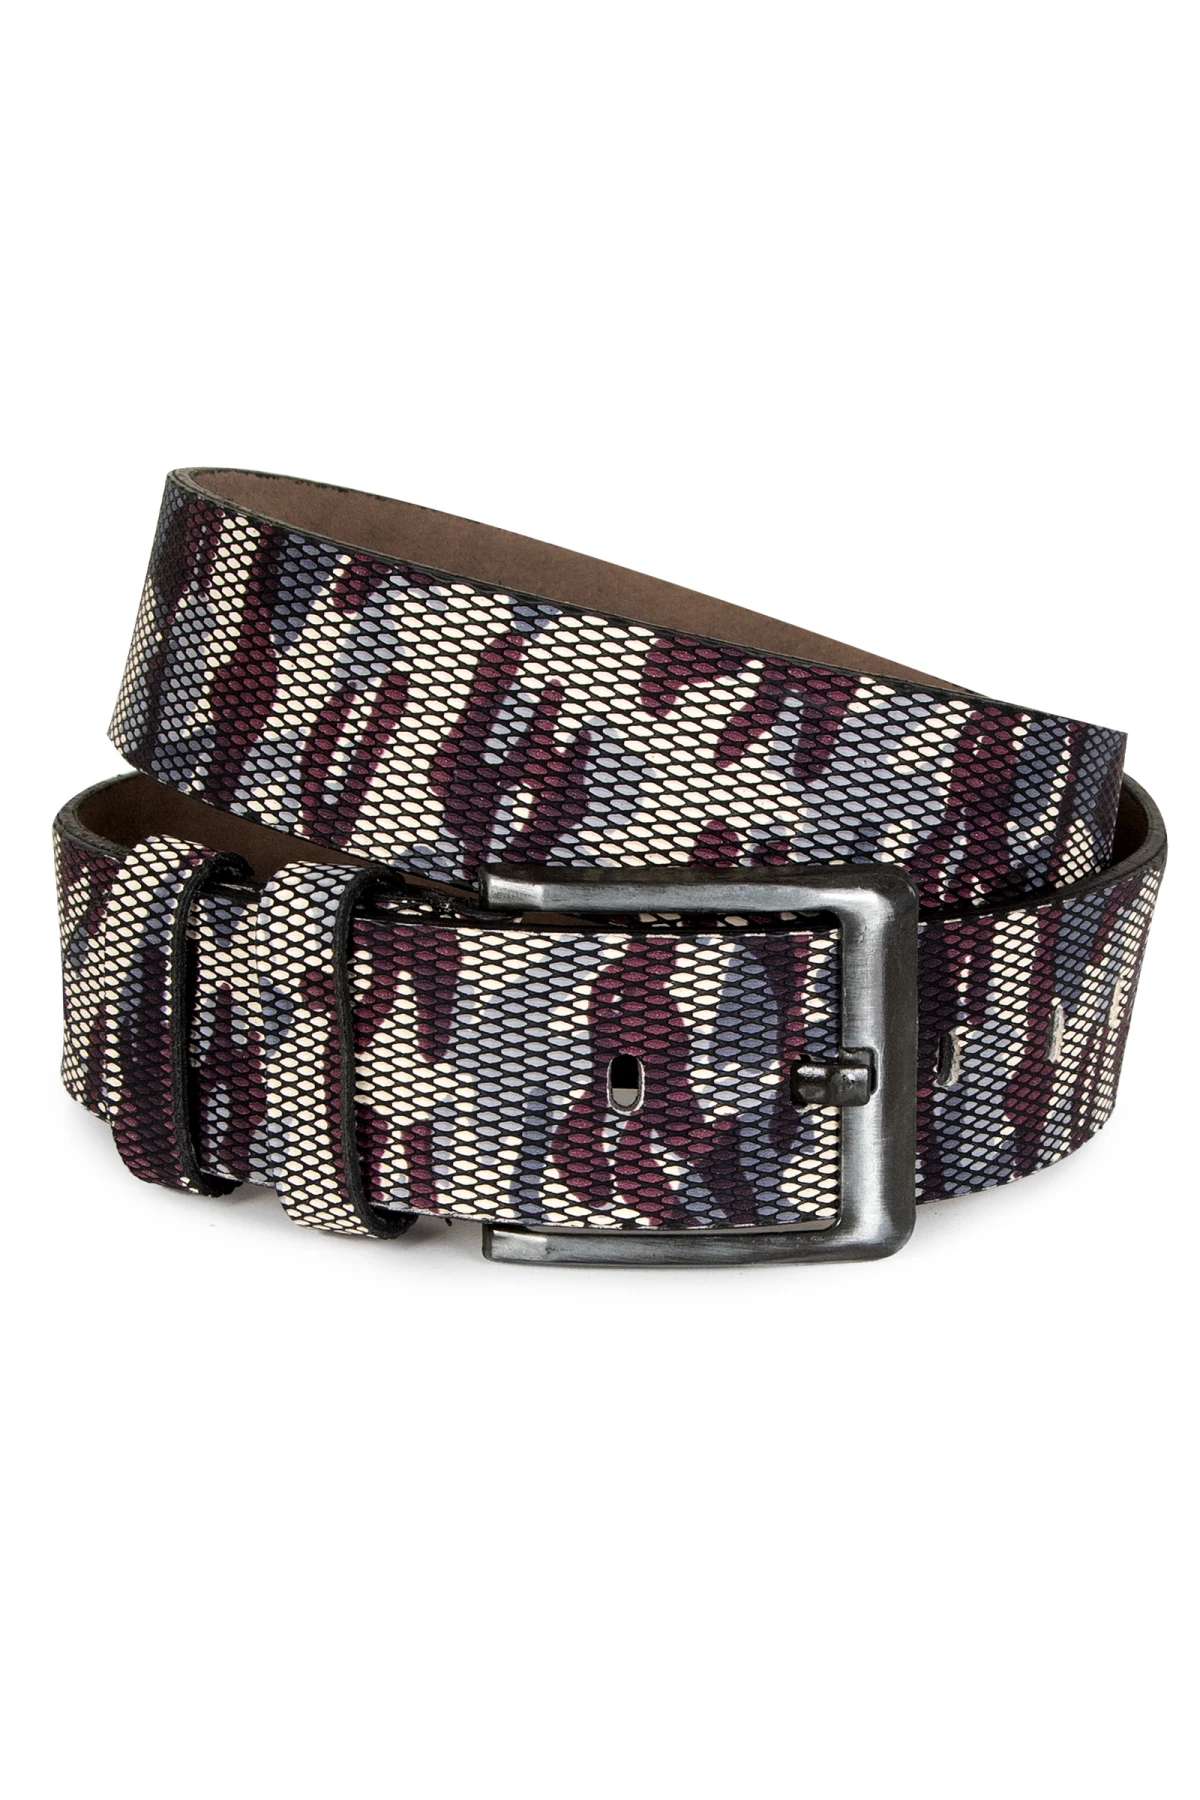 DeepSEA camouflage patterned sports men belt 1801311